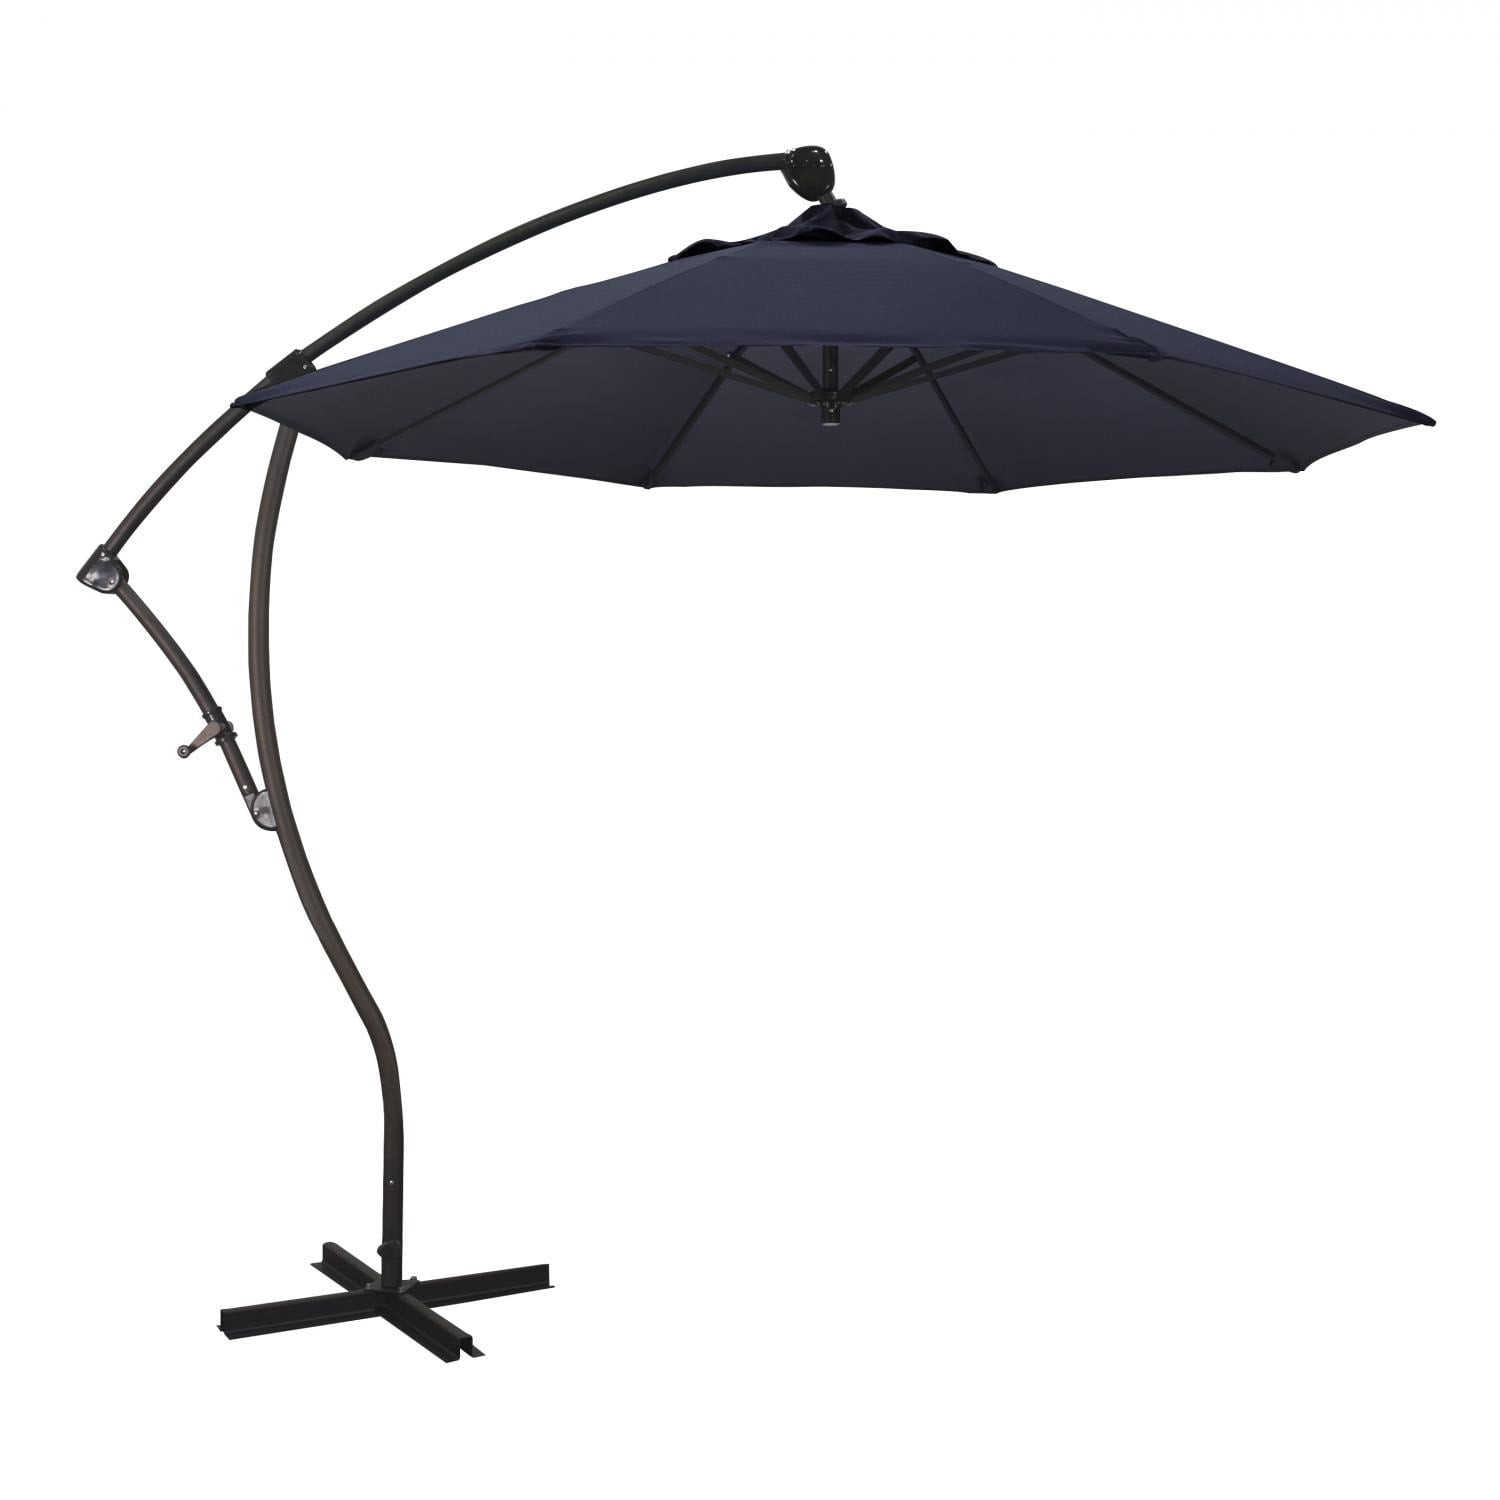 Californiaumbrella Ba908117-f09 Cantilever Umbrella, Navy Blue - 9 Ft. X 8 Ribs